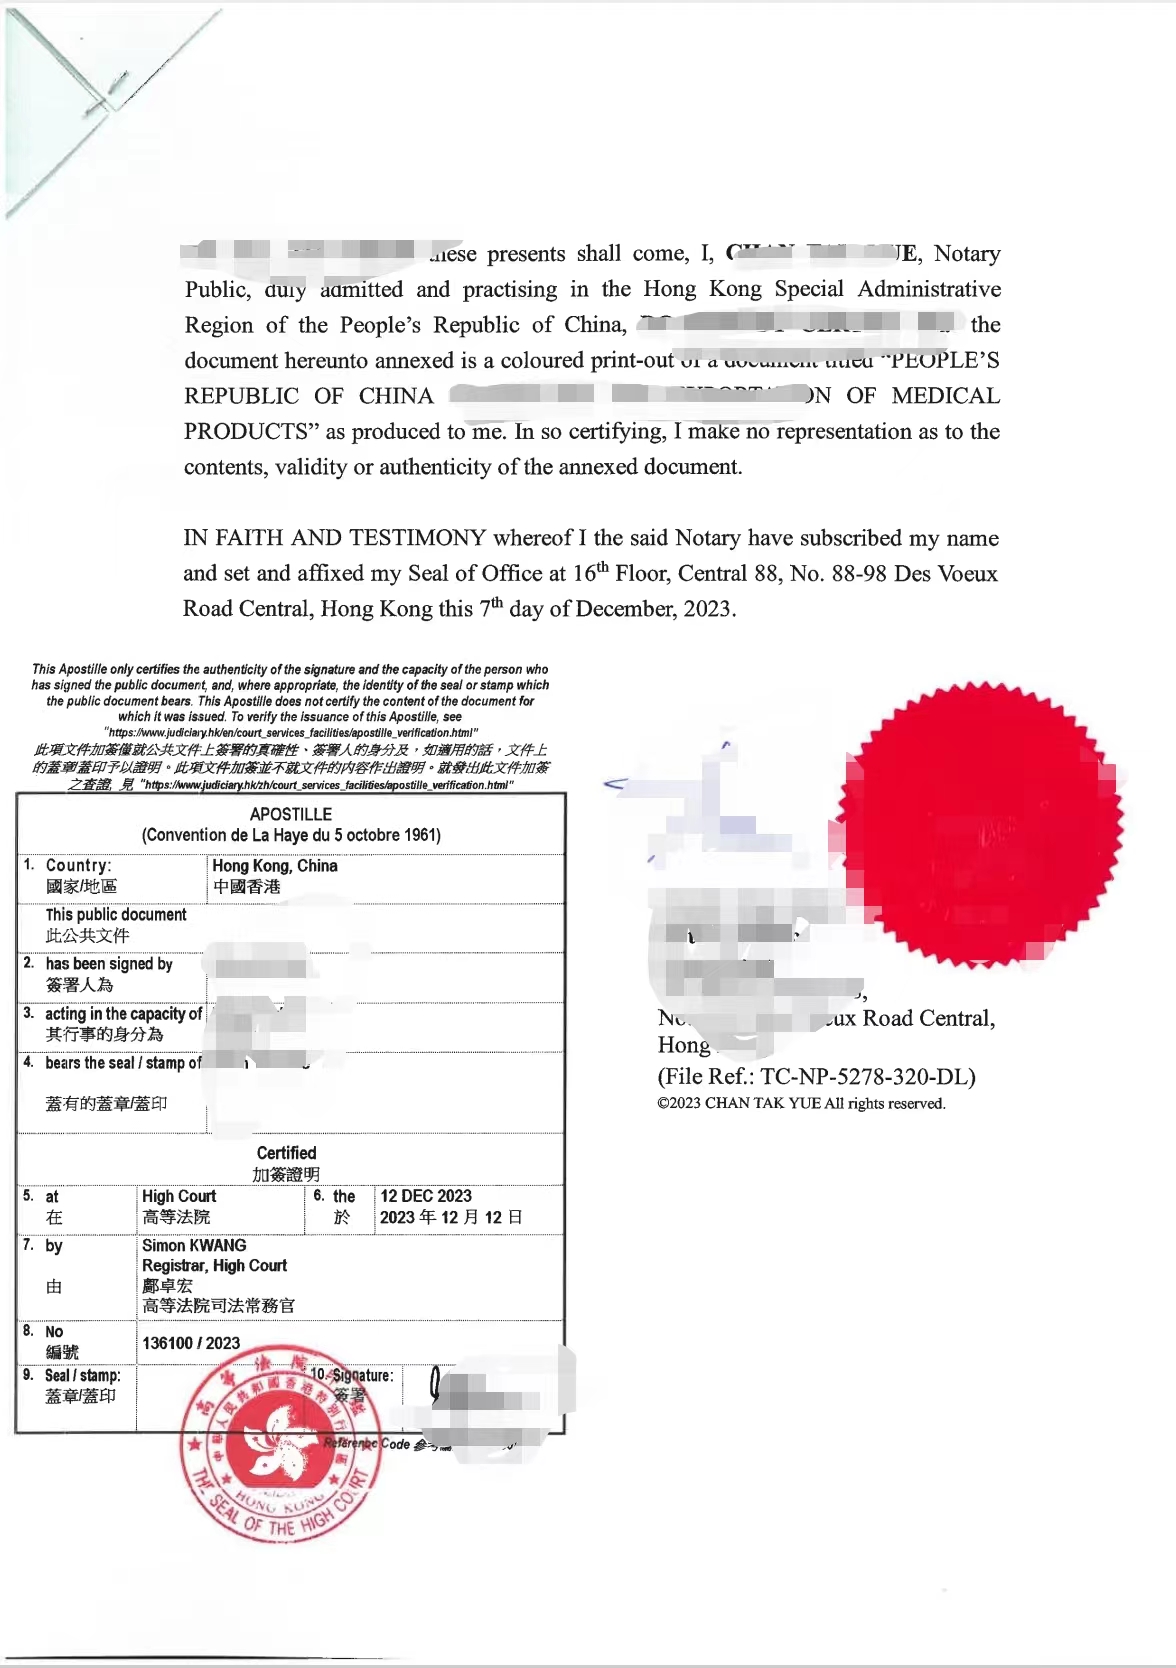 南京无犯罪证明海牙认证 哪里办理 APOSTILLE认证